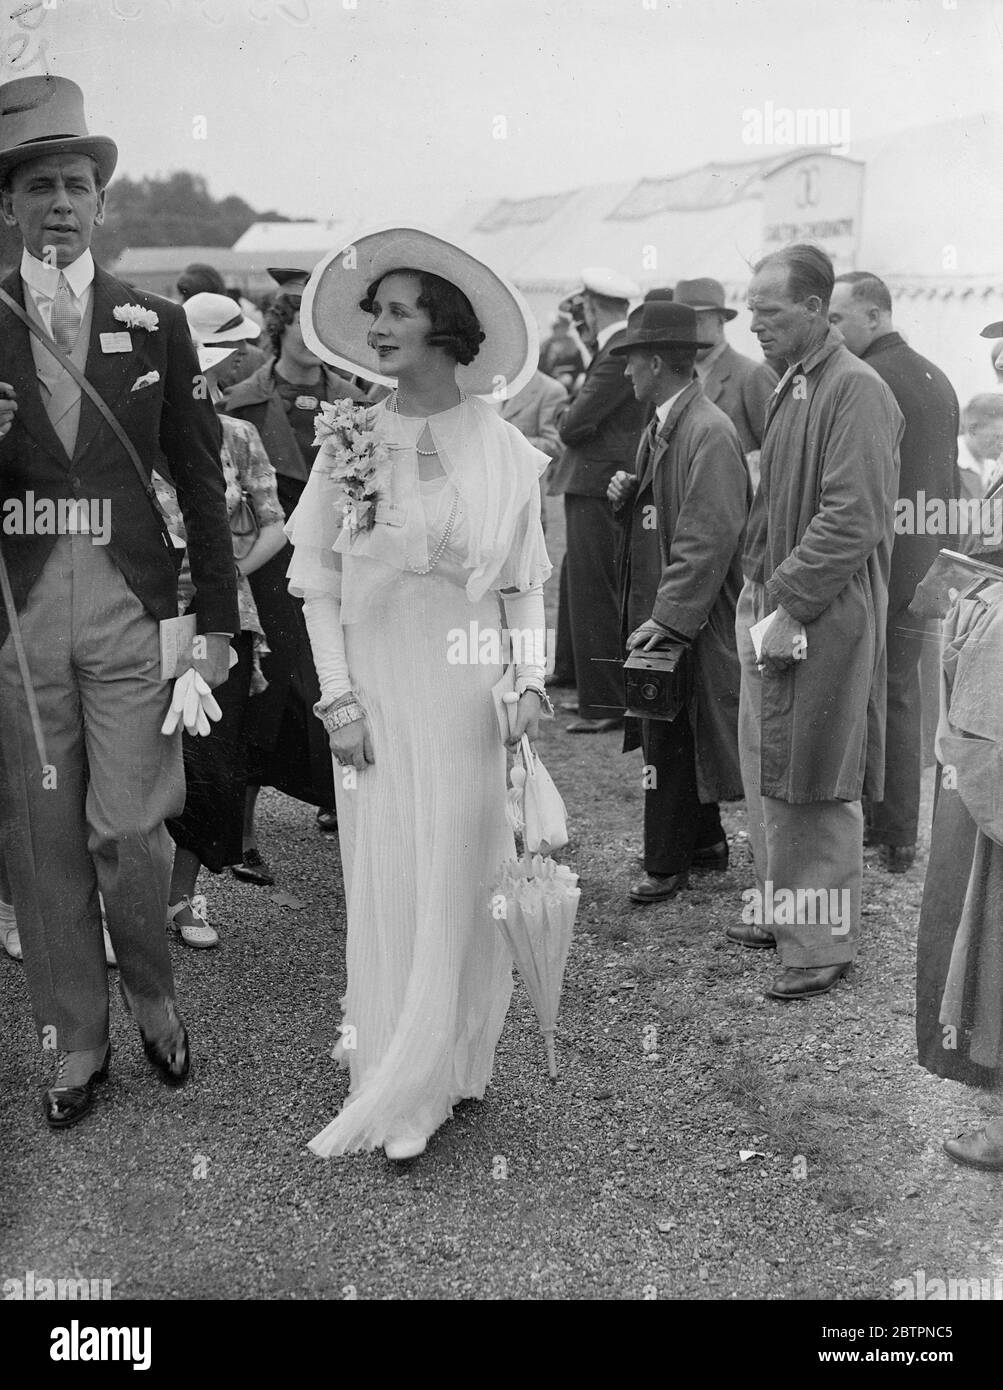 La moda Ascot di Lady Dalrymple-Champney. Spettacoli fotografici: Lady Dalrymple-Champney indossa una bella moda bianca il secondo giorno della riunione Ascot. 16 giugno 1937 Foto Stock